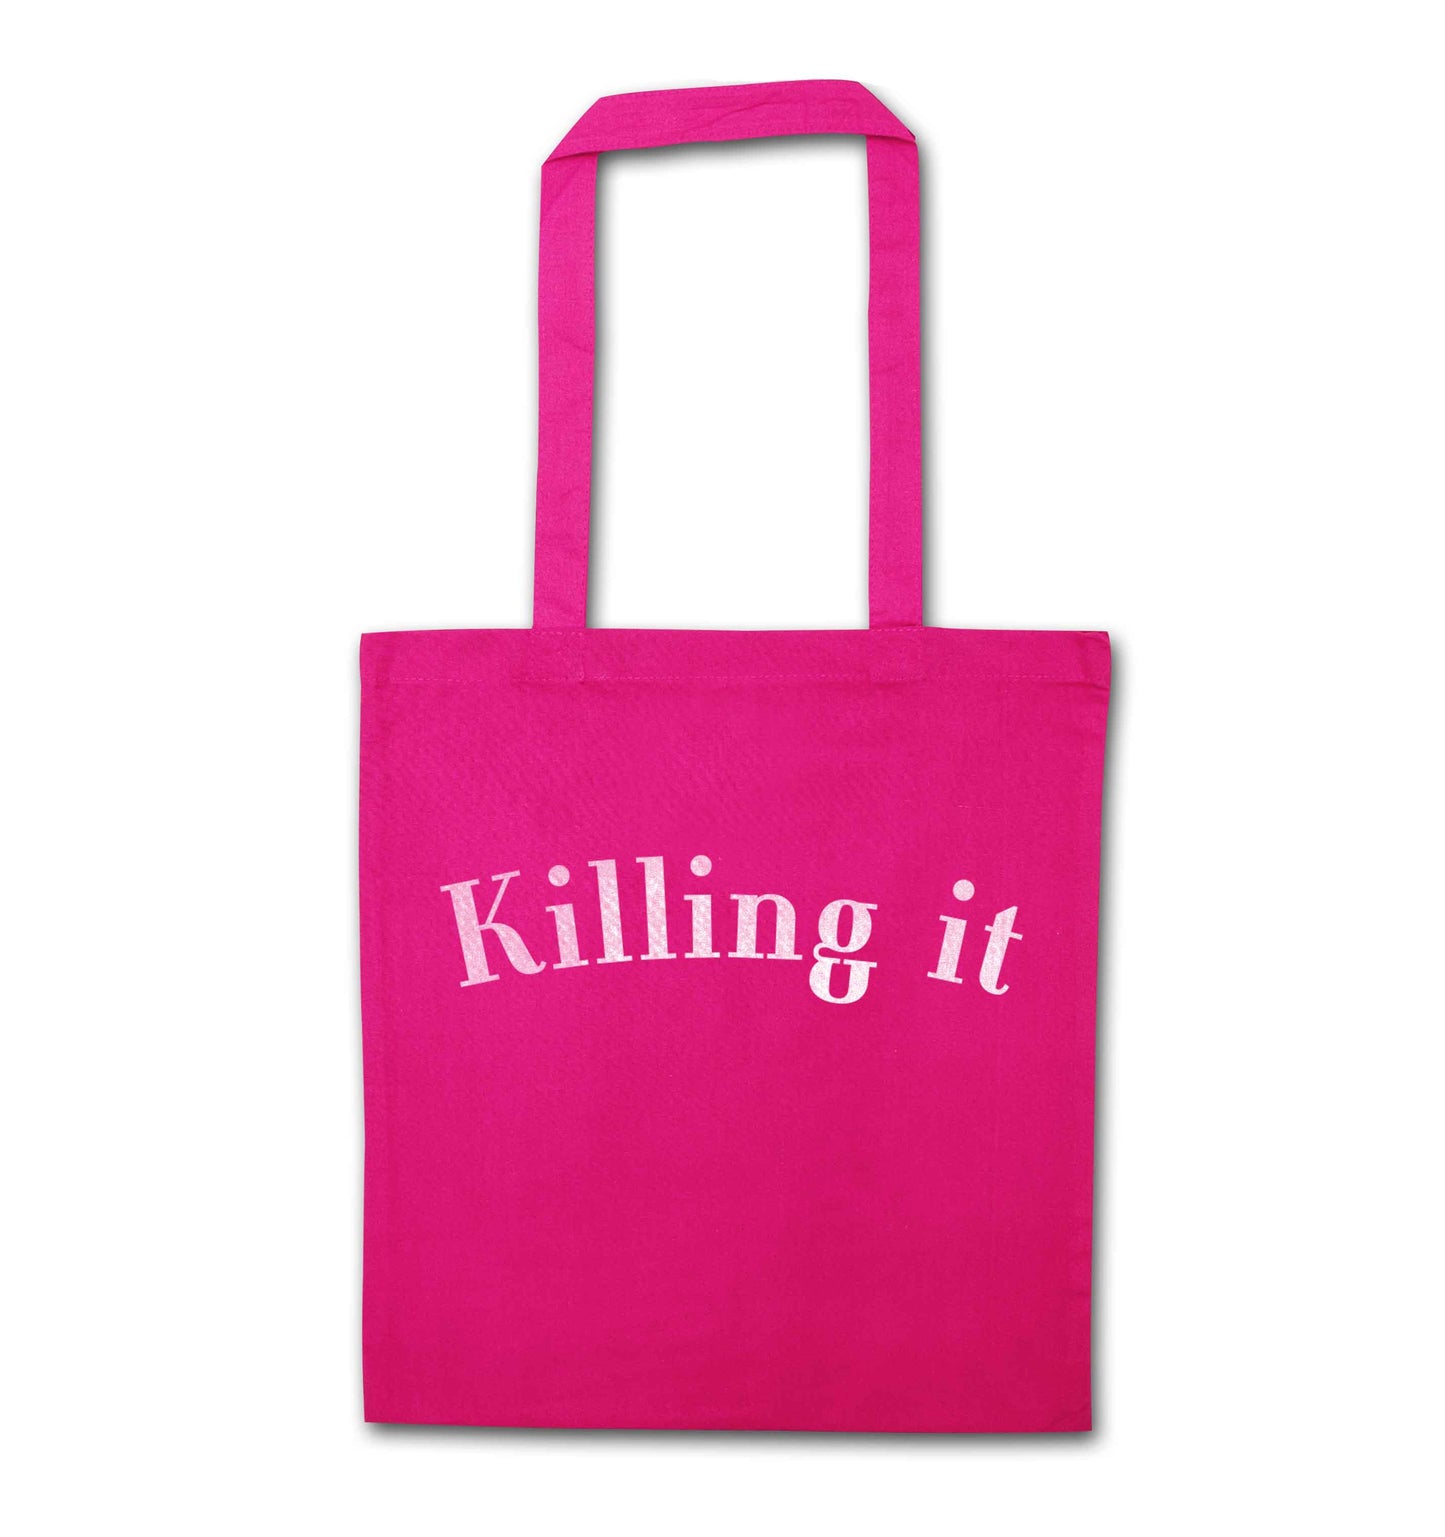 Killing it pink tote bag